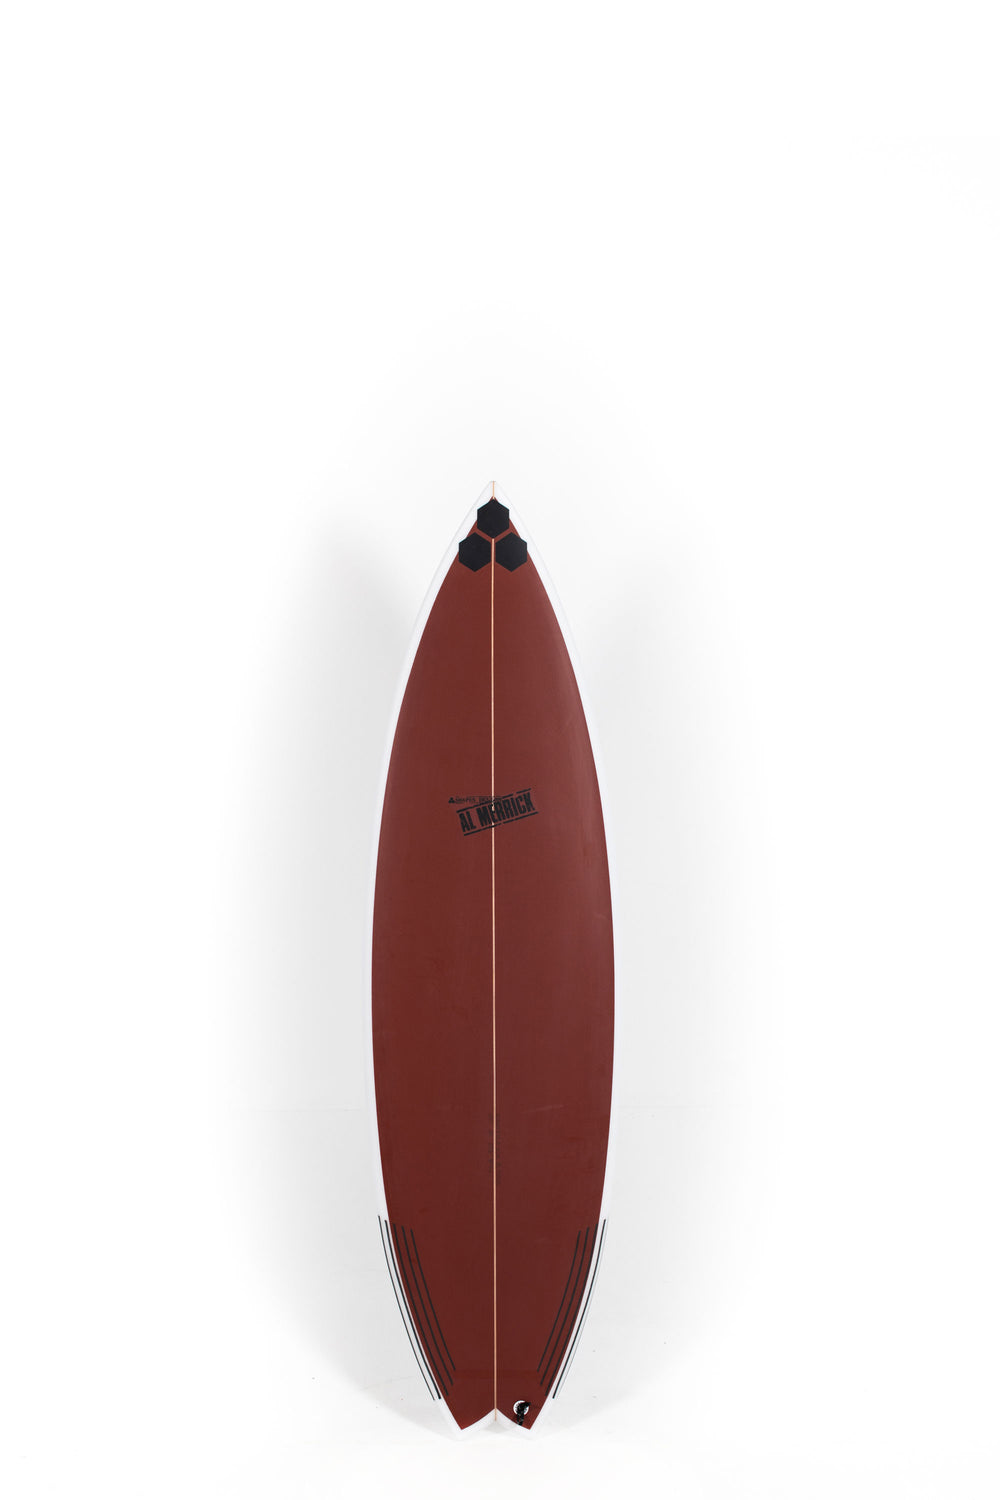 Pukas Surf Shop - Channel Islands - OG Flyer by Al Merrick - 6'1